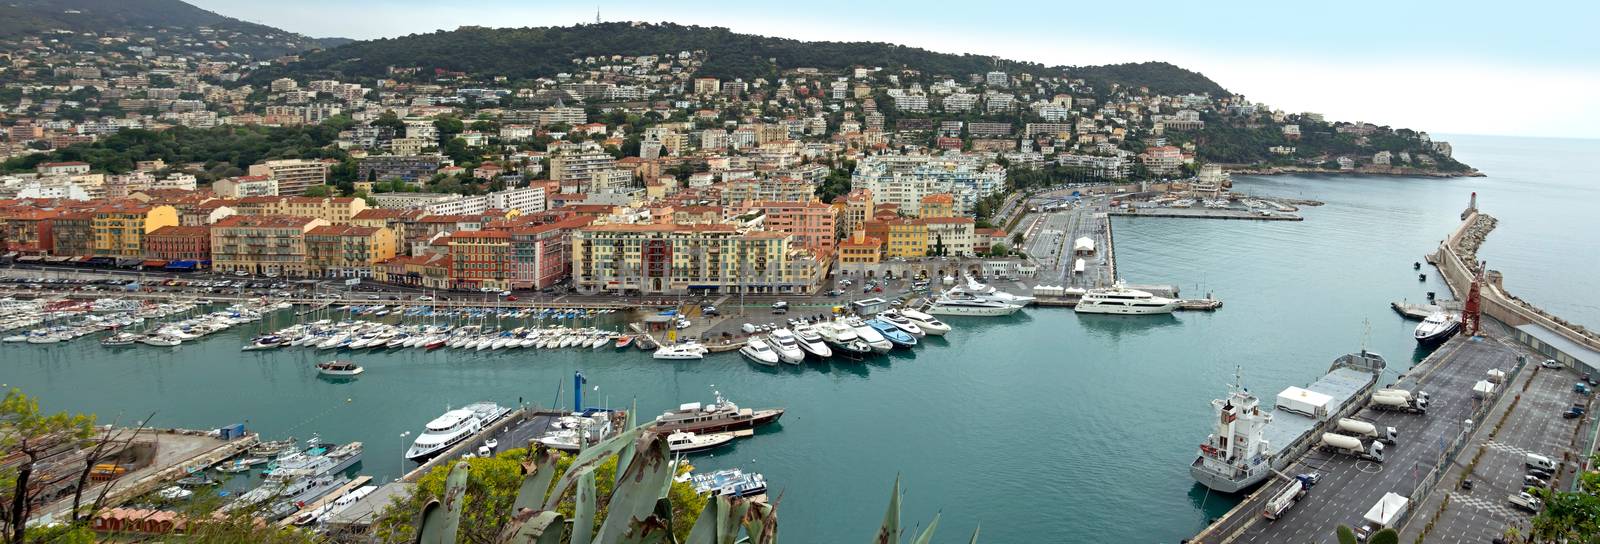 Nice - Panoramic view of Port de Nice by Venakr